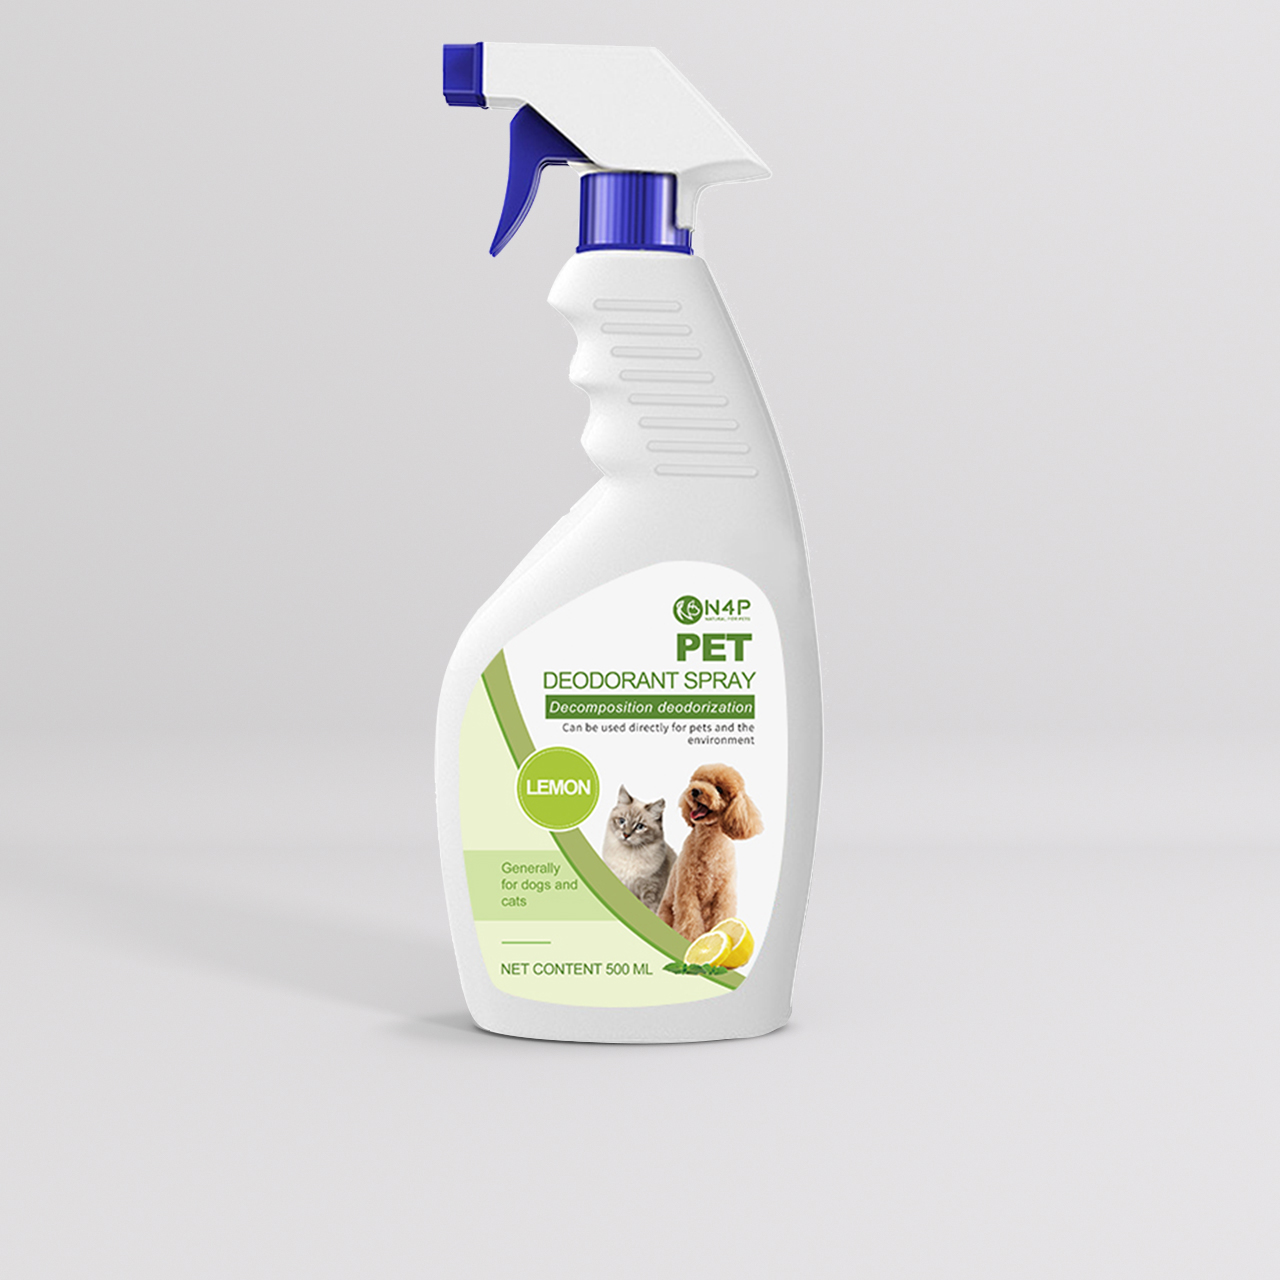 N4P Pets Deodorant Spray